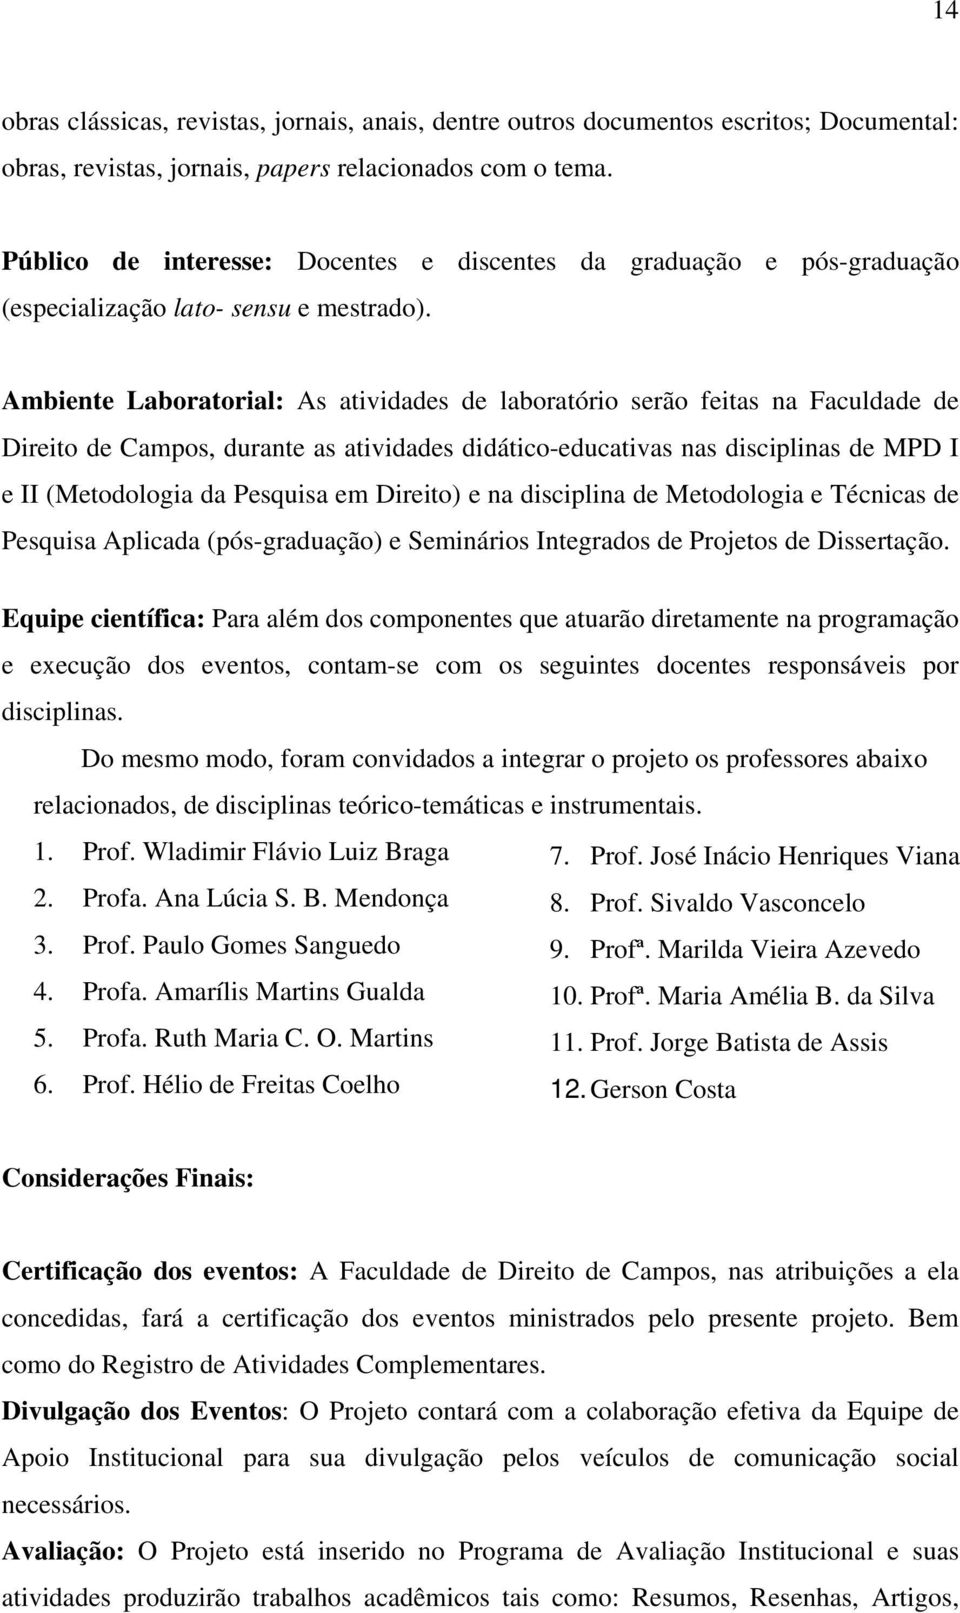 Ambiente Laboratorial: As atividades de laboratório serão feitas na Faculdade de Direito de Campos, durante as atividades didático-educativas nas disciplinas de MPD I e II (Metodologia da Pesquisa em